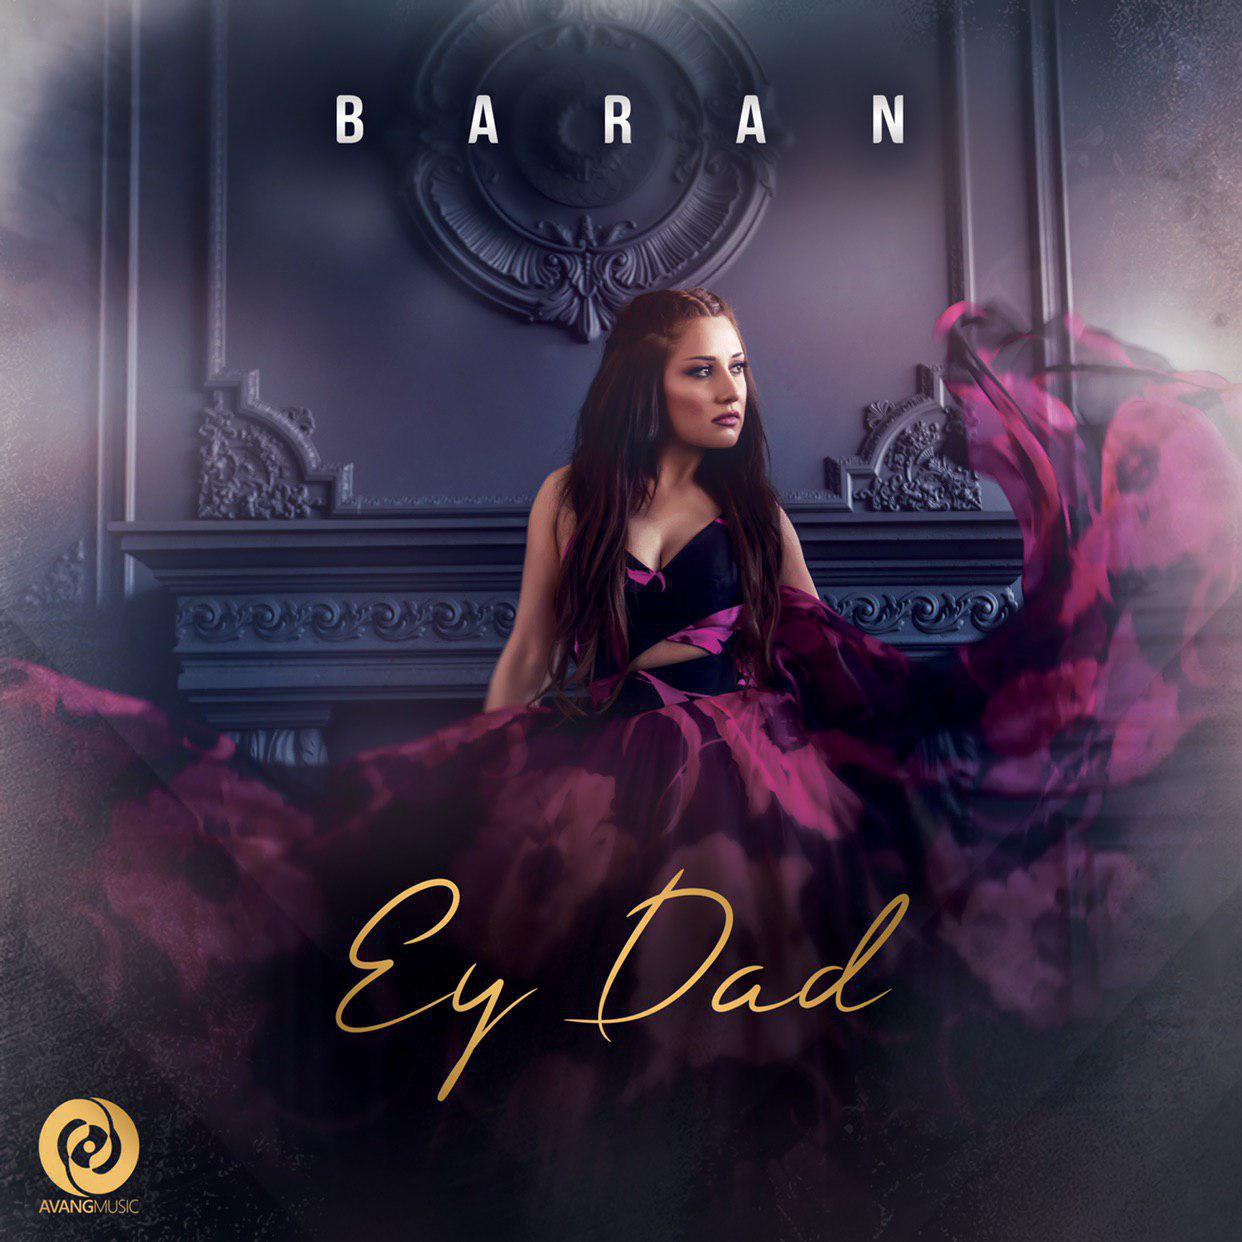  دانلود آهنگ جدید باران - ای داد | Download New Music By Baran - Ey Dad